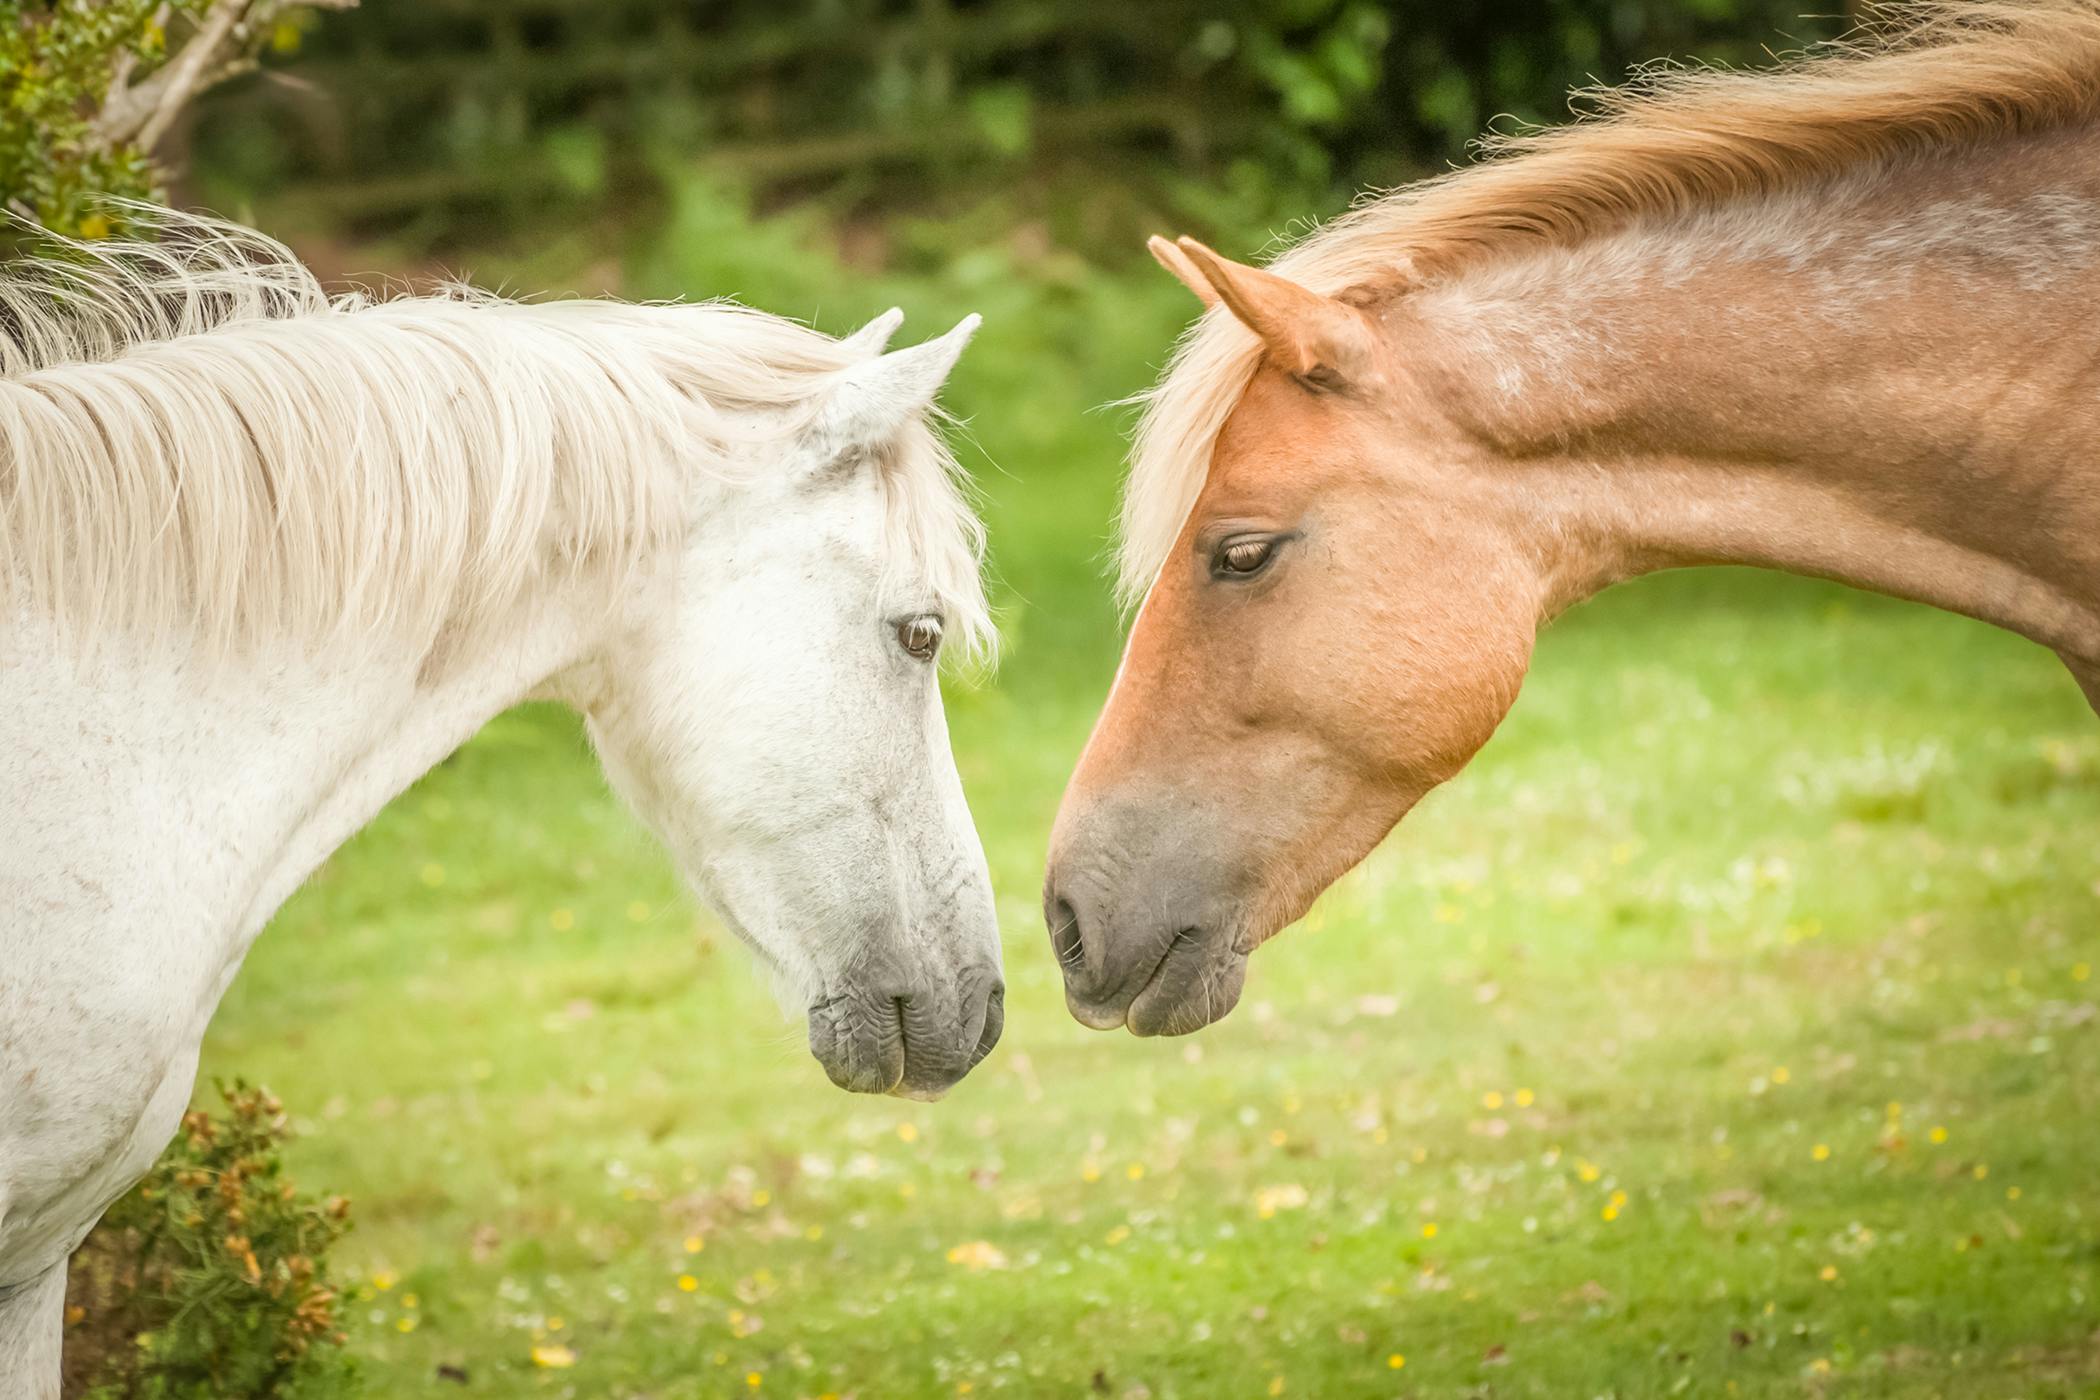 Breeding (Stallion) in Horses Symptoms, Causes, Diagnosis, Treatment